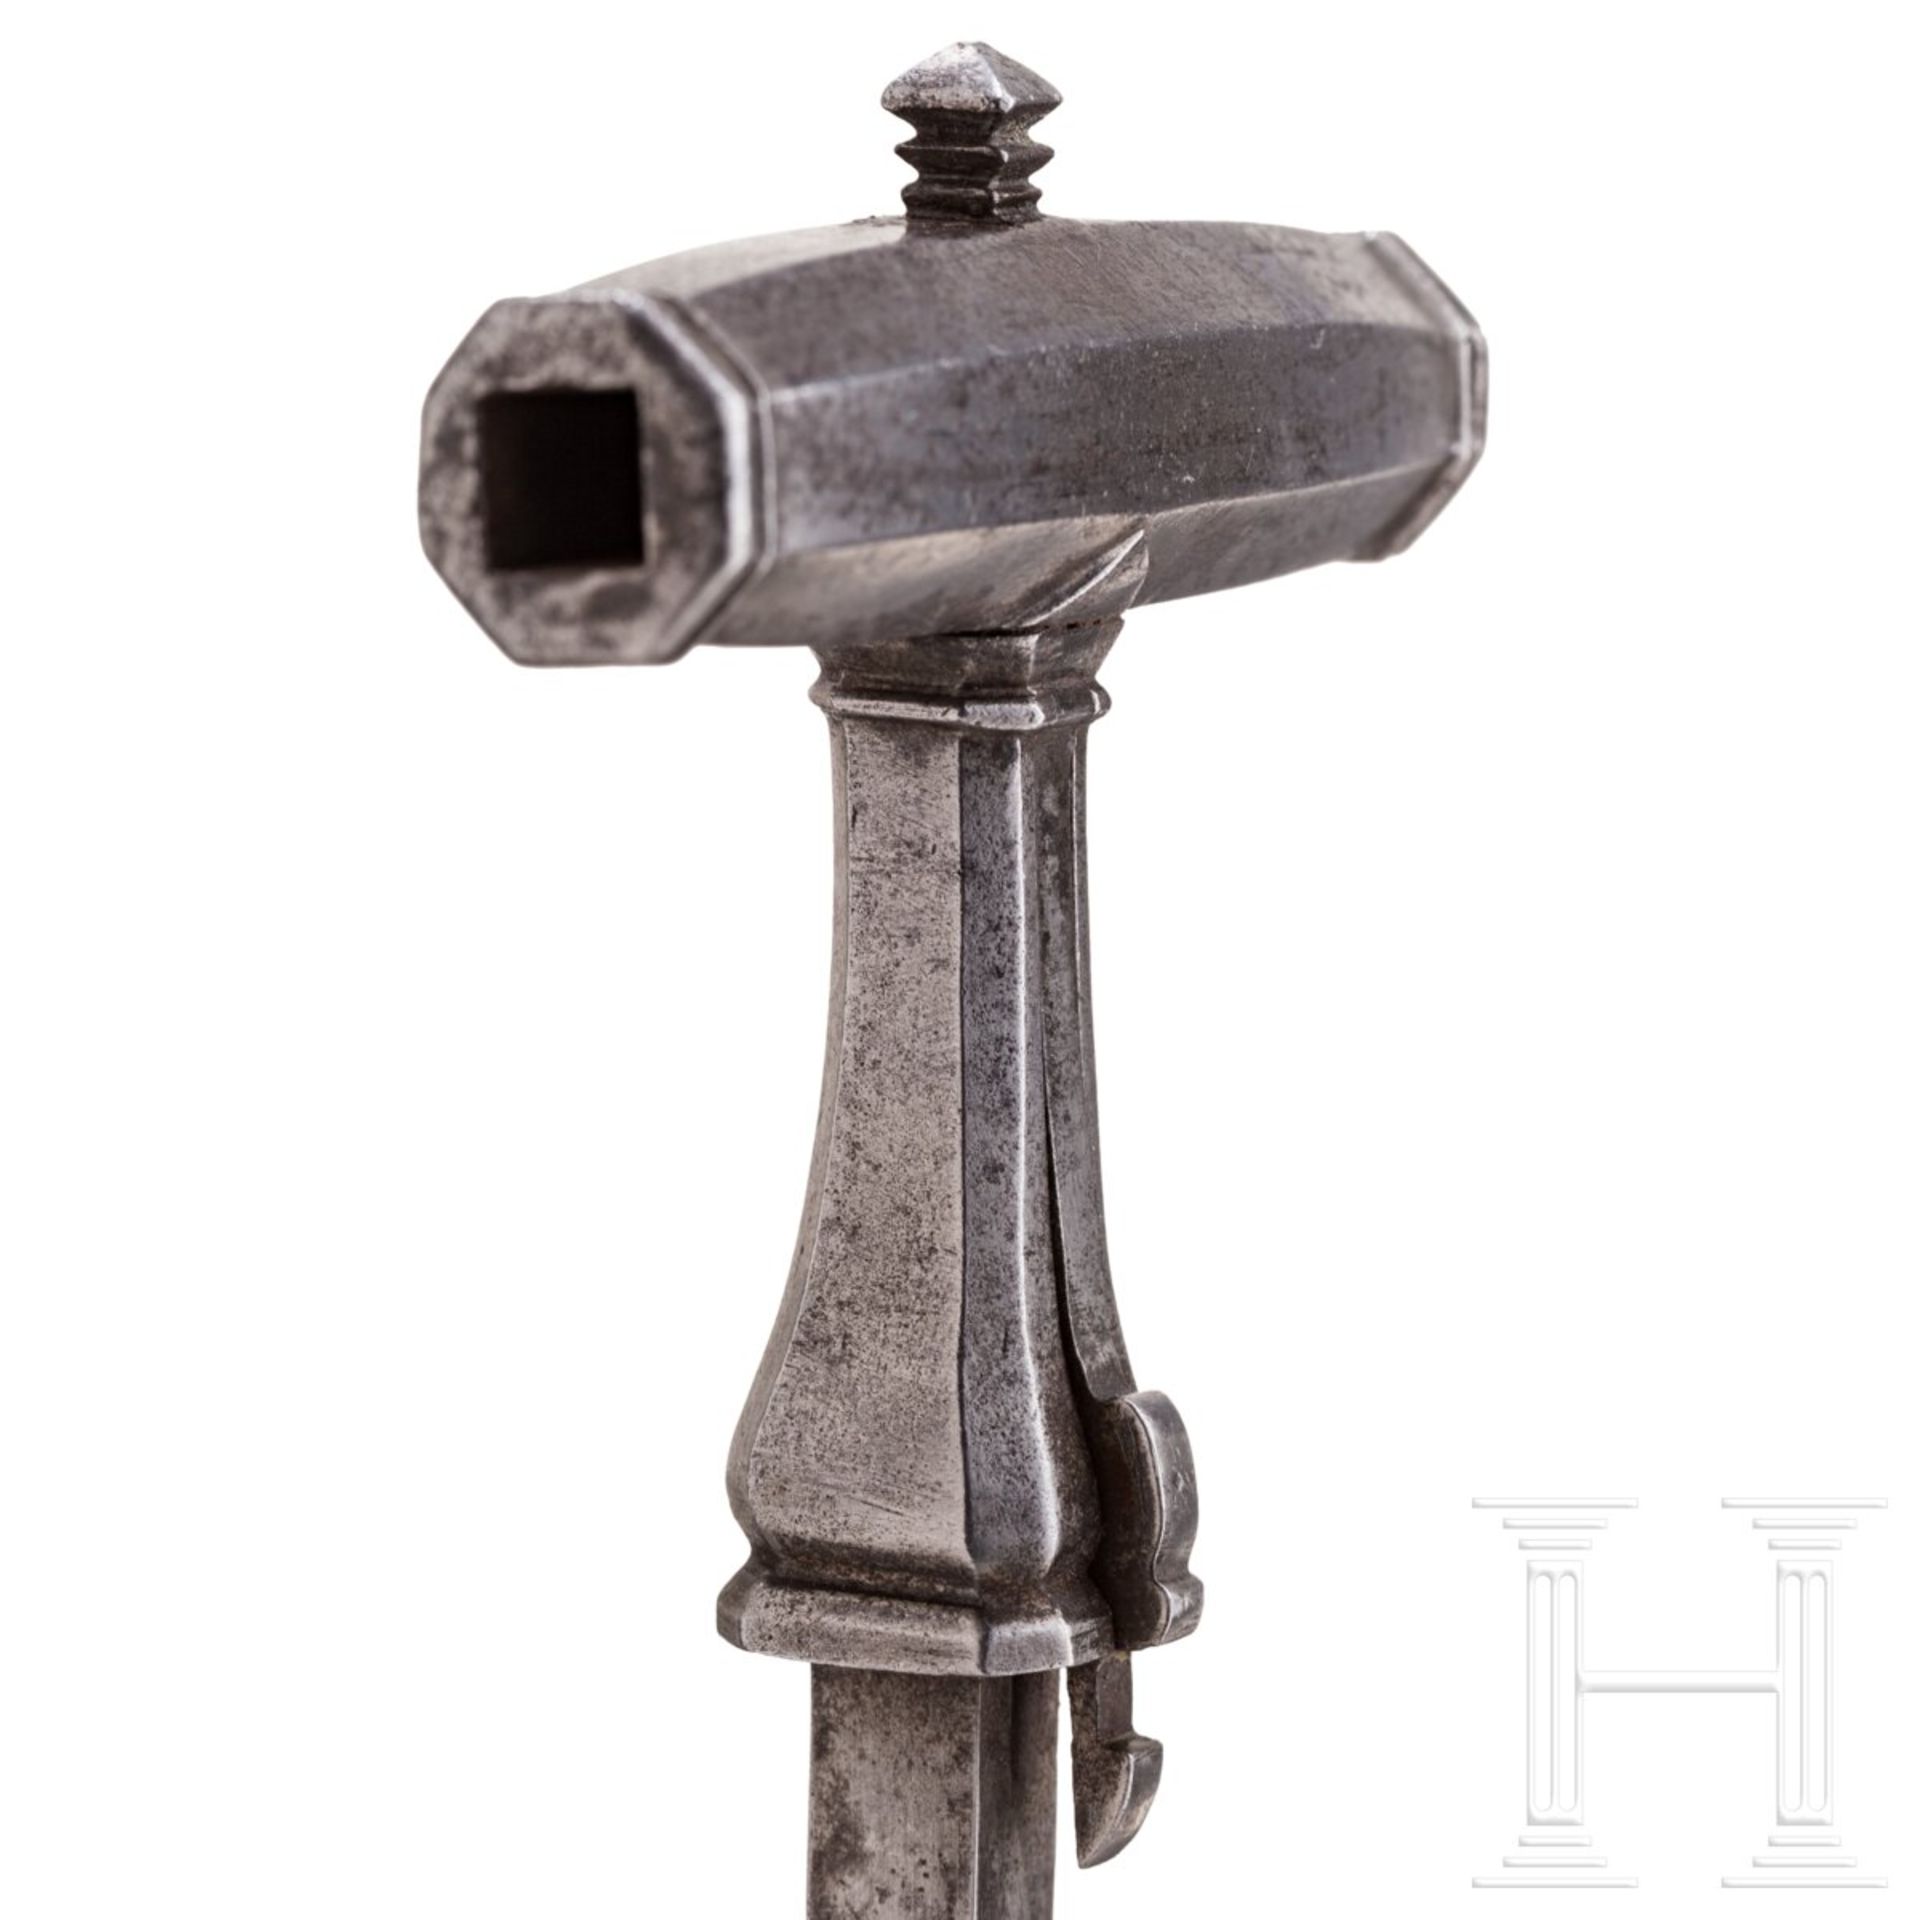 Musketier-Stilett mit integriertem Radschloss-Schlüssel, deutsch, Mitte 17. Jhdt. - Bild 5 aus 7